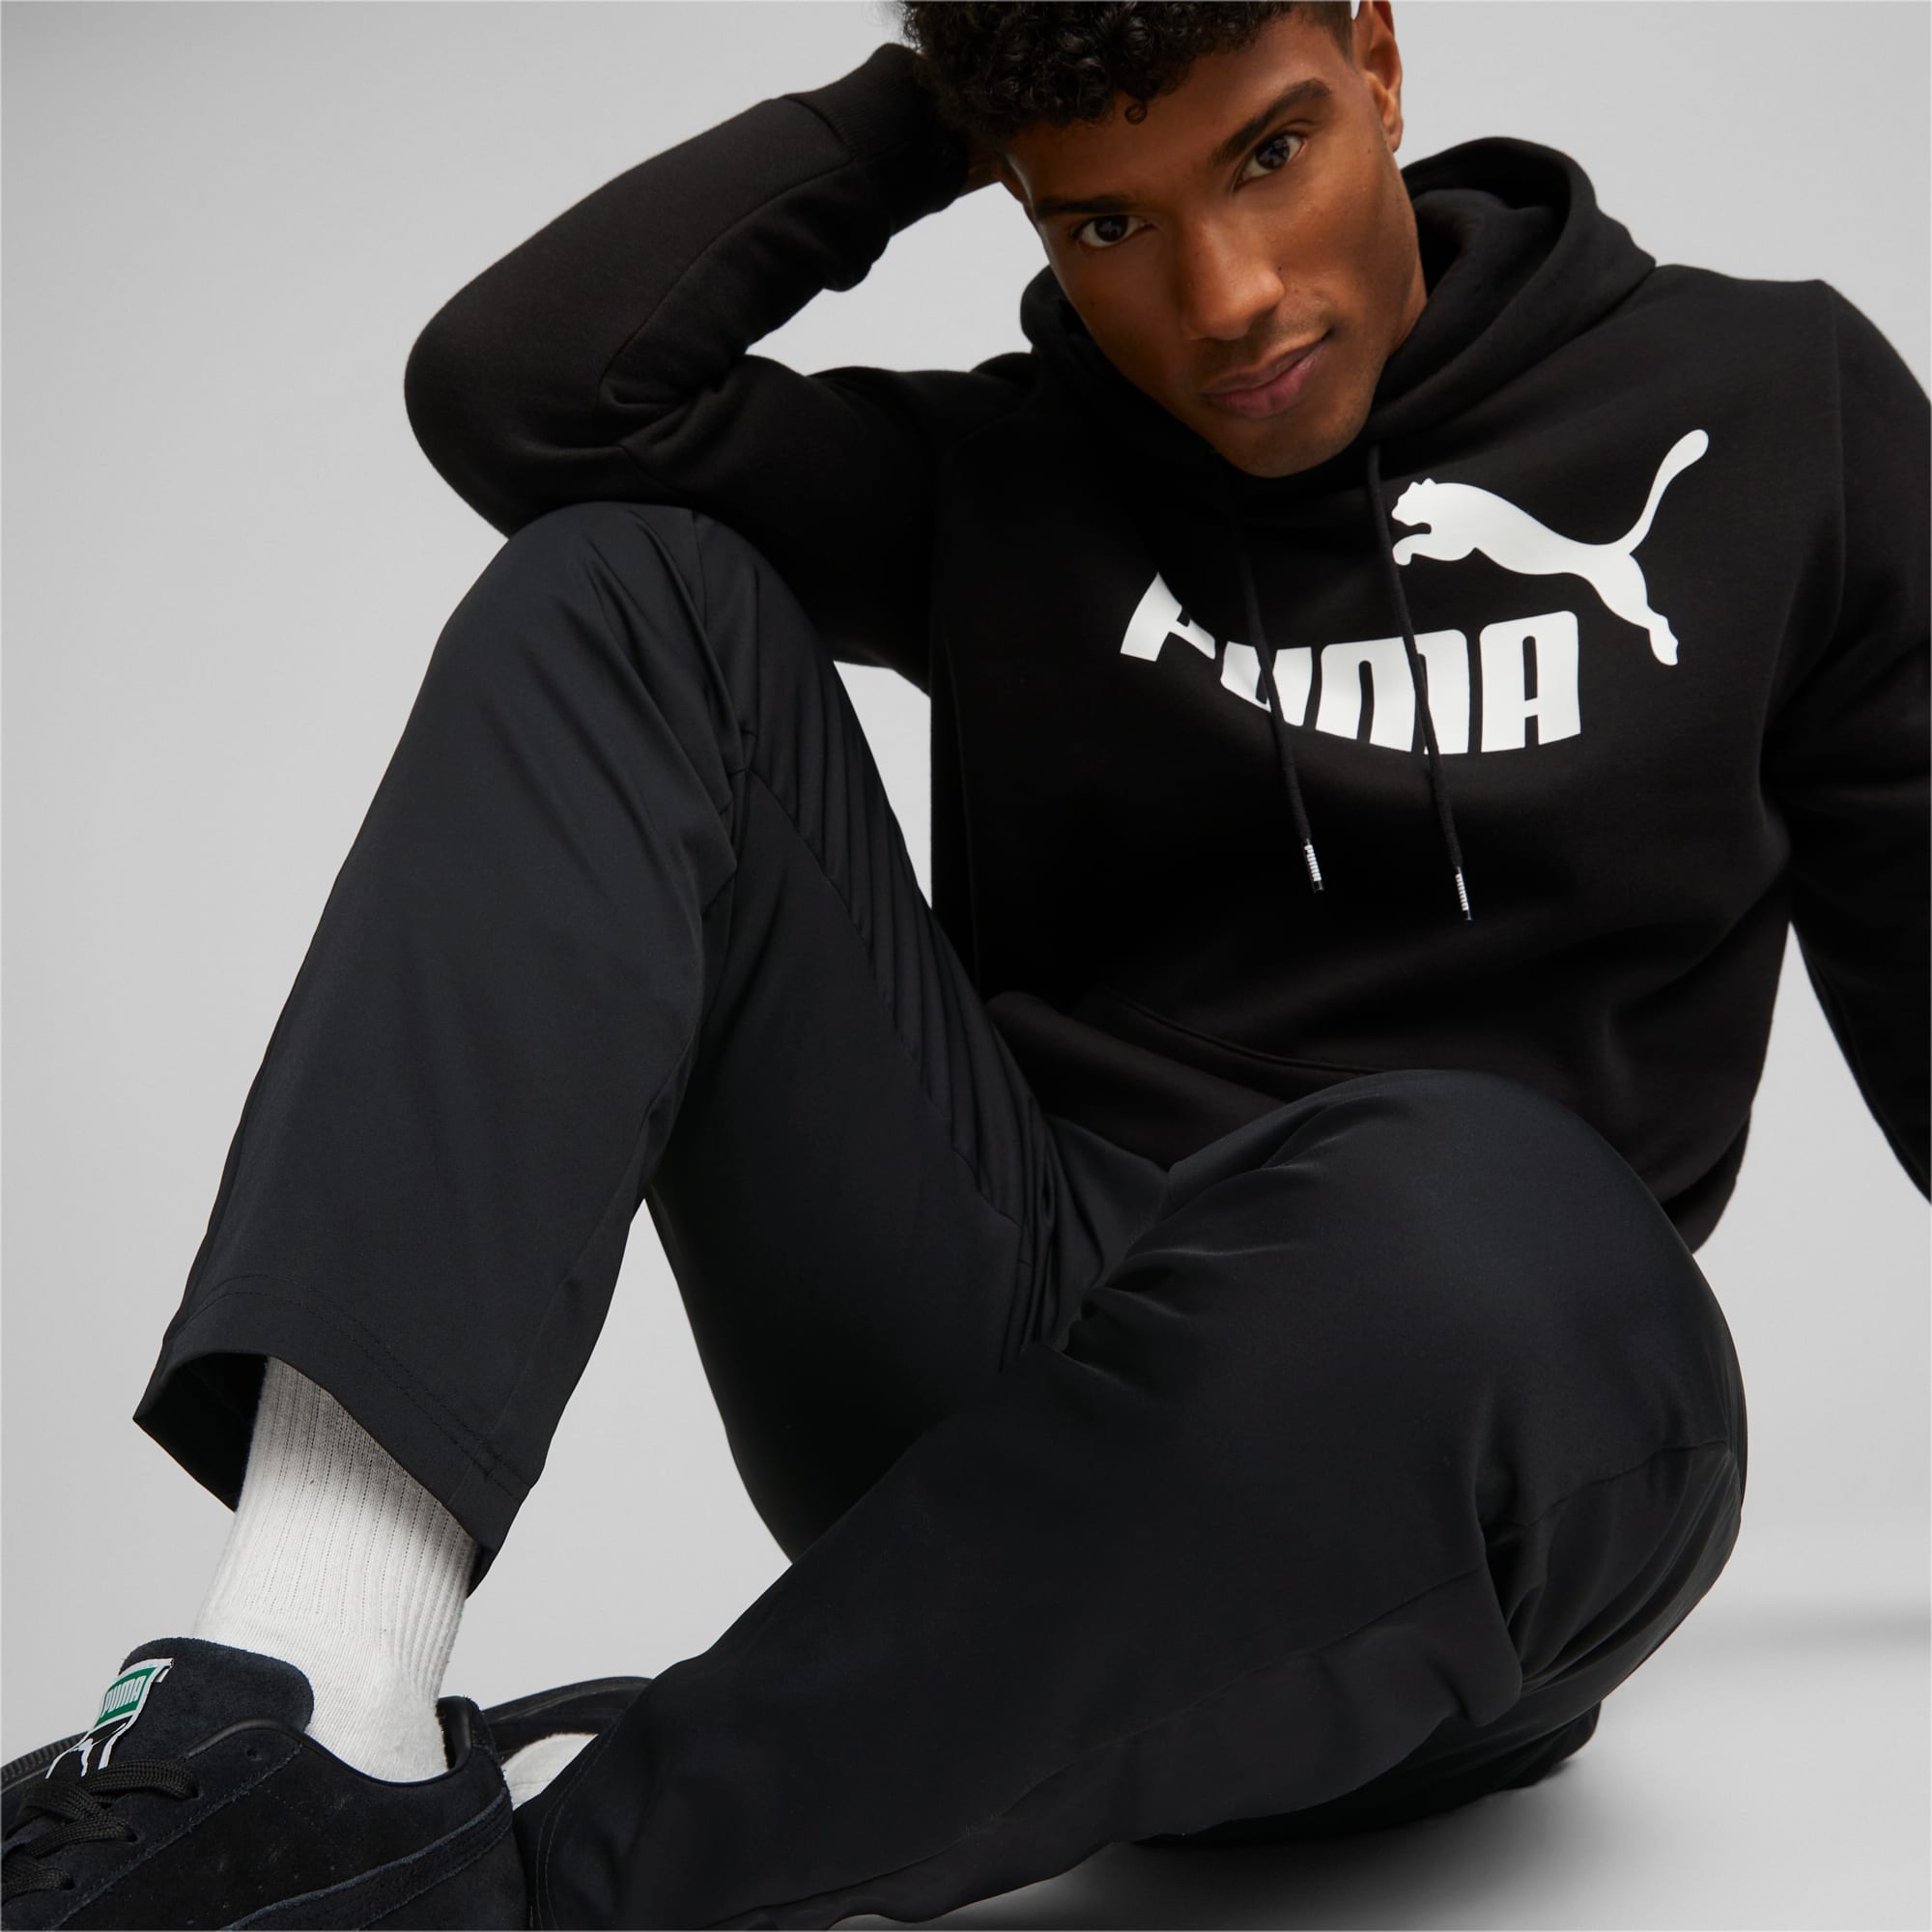 PUMA Active Woven Men's Sweatpants, Black, Size XS, Clothing